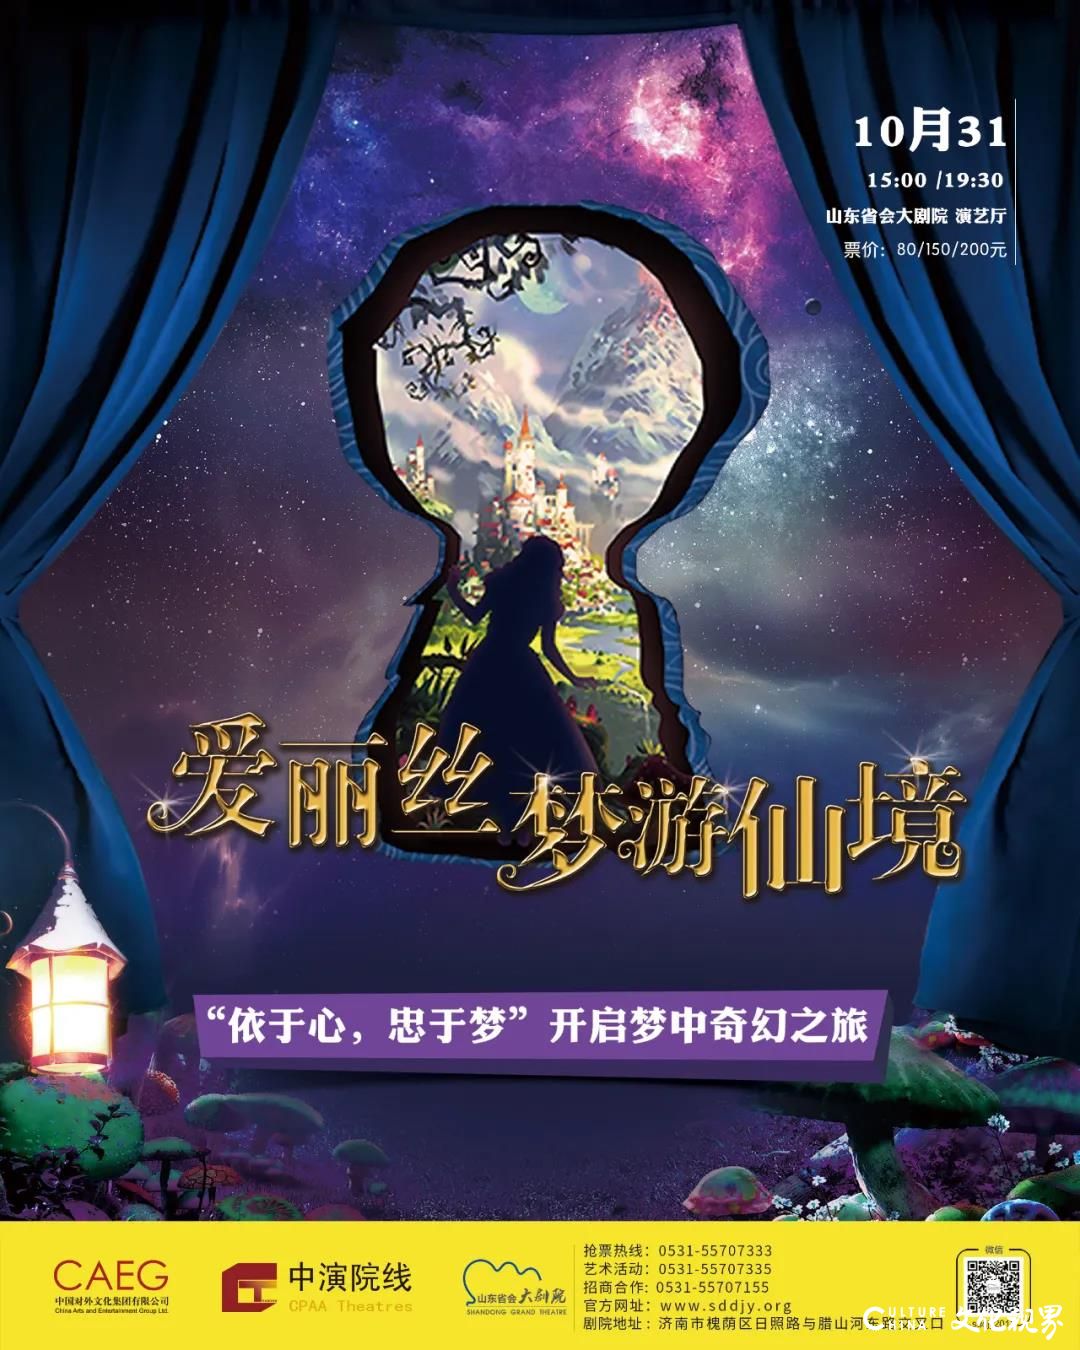 依于心 终于梦——山东省会大剧院10月31日邀你一起与爱丽丝开启梦中奇幻之旅